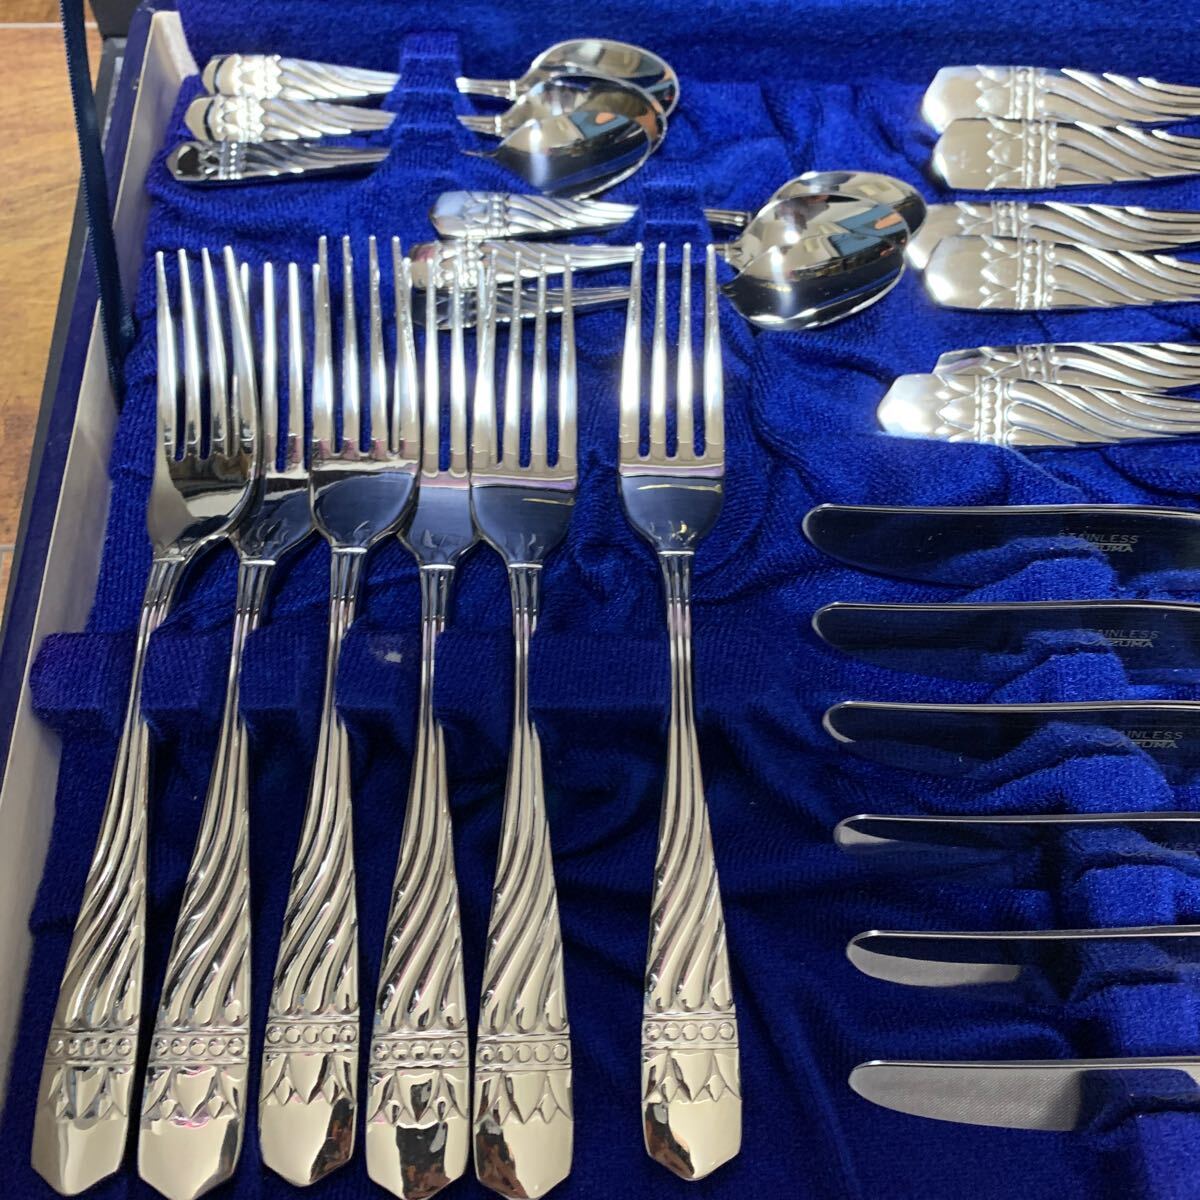 Artenon arte non AZUMAazuma cutlery set spoon Fork knife tina-6 customer 24 pcs set stainless steel 18-18